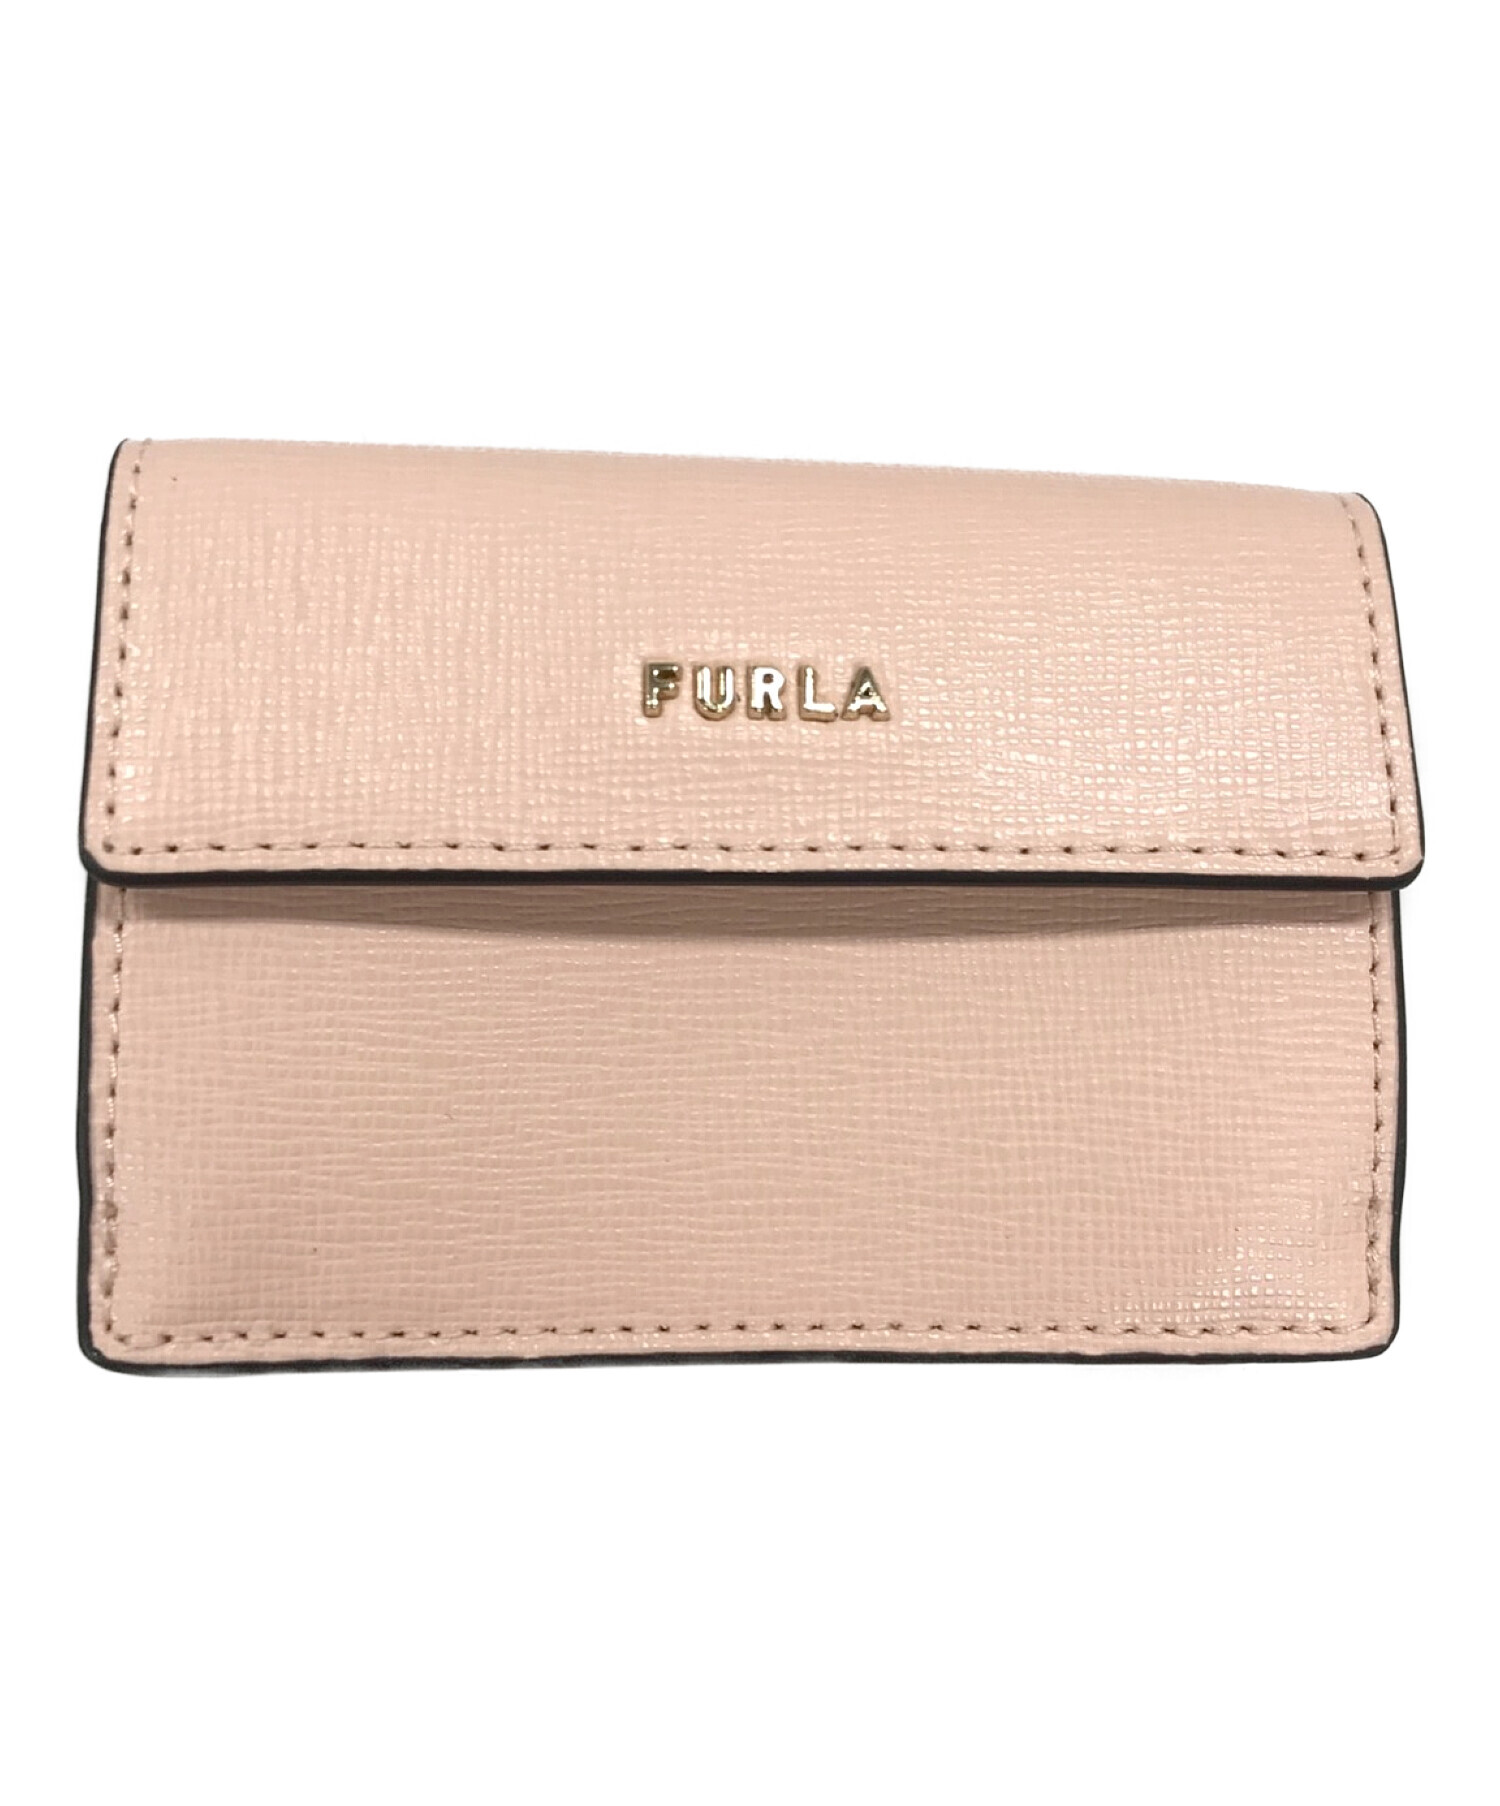 FURLA (フルラ) コインケース ピンク サイズ:実寸サイズにてご確認ください。 未使用品